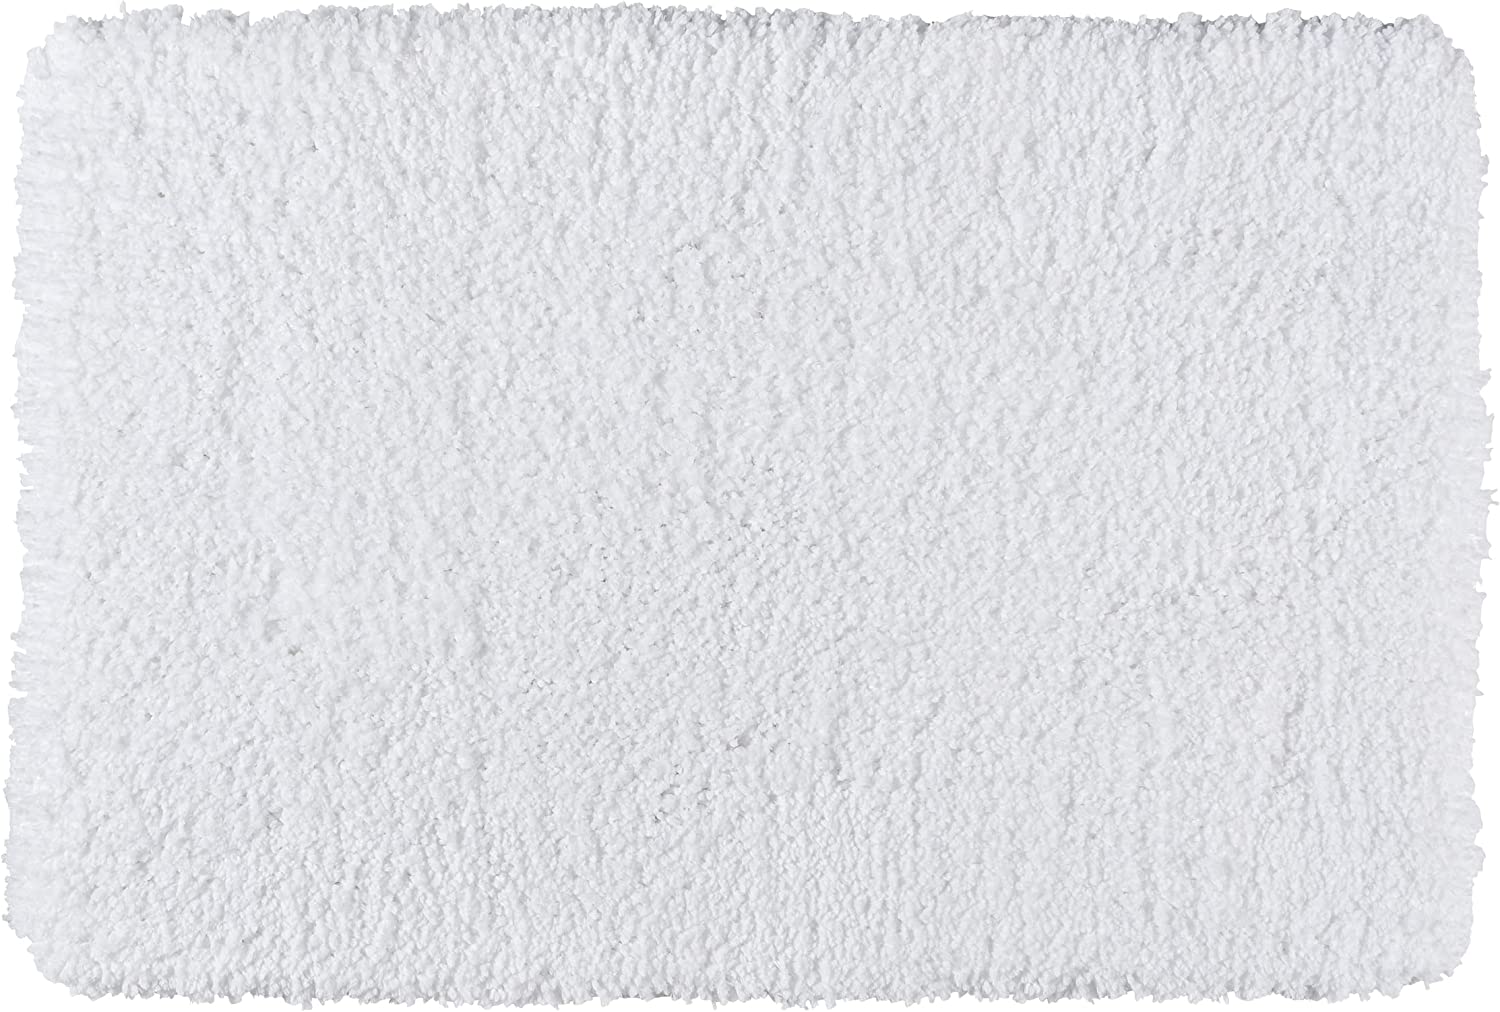 Badteppich Belize Weiß, 60 x 90 cm - Badematte, sicher, flauschig, fusselfrei, Polyester, 60 x 90 cm, Weiß